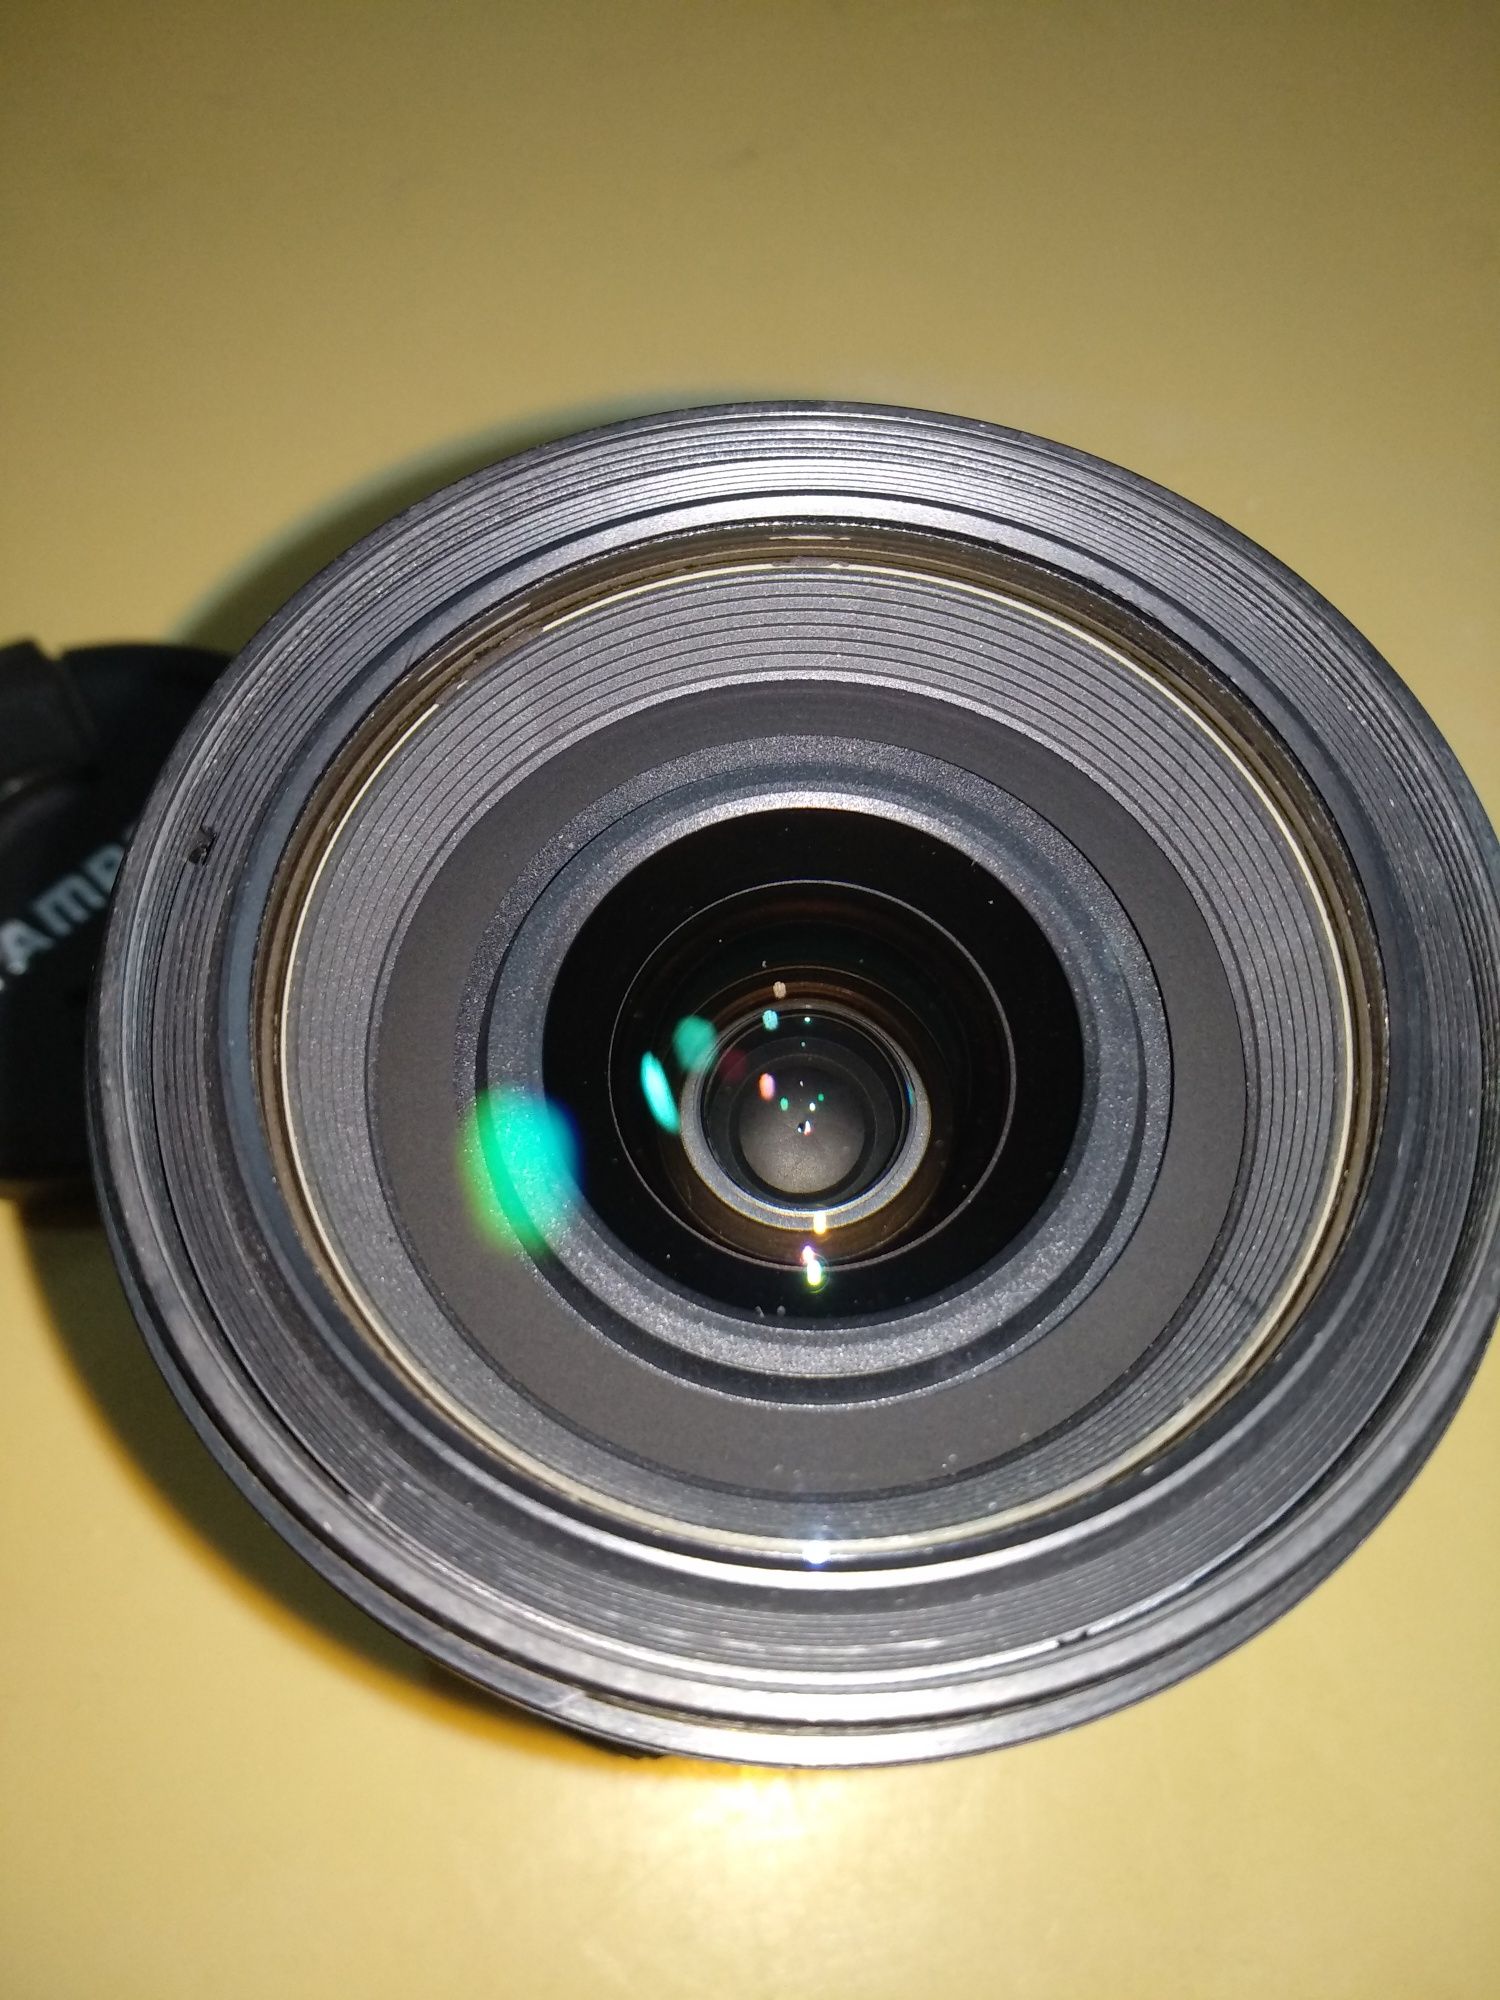 Продам объектив Tamron 17-50 f2.8 (Nikon F-mount) практически новый